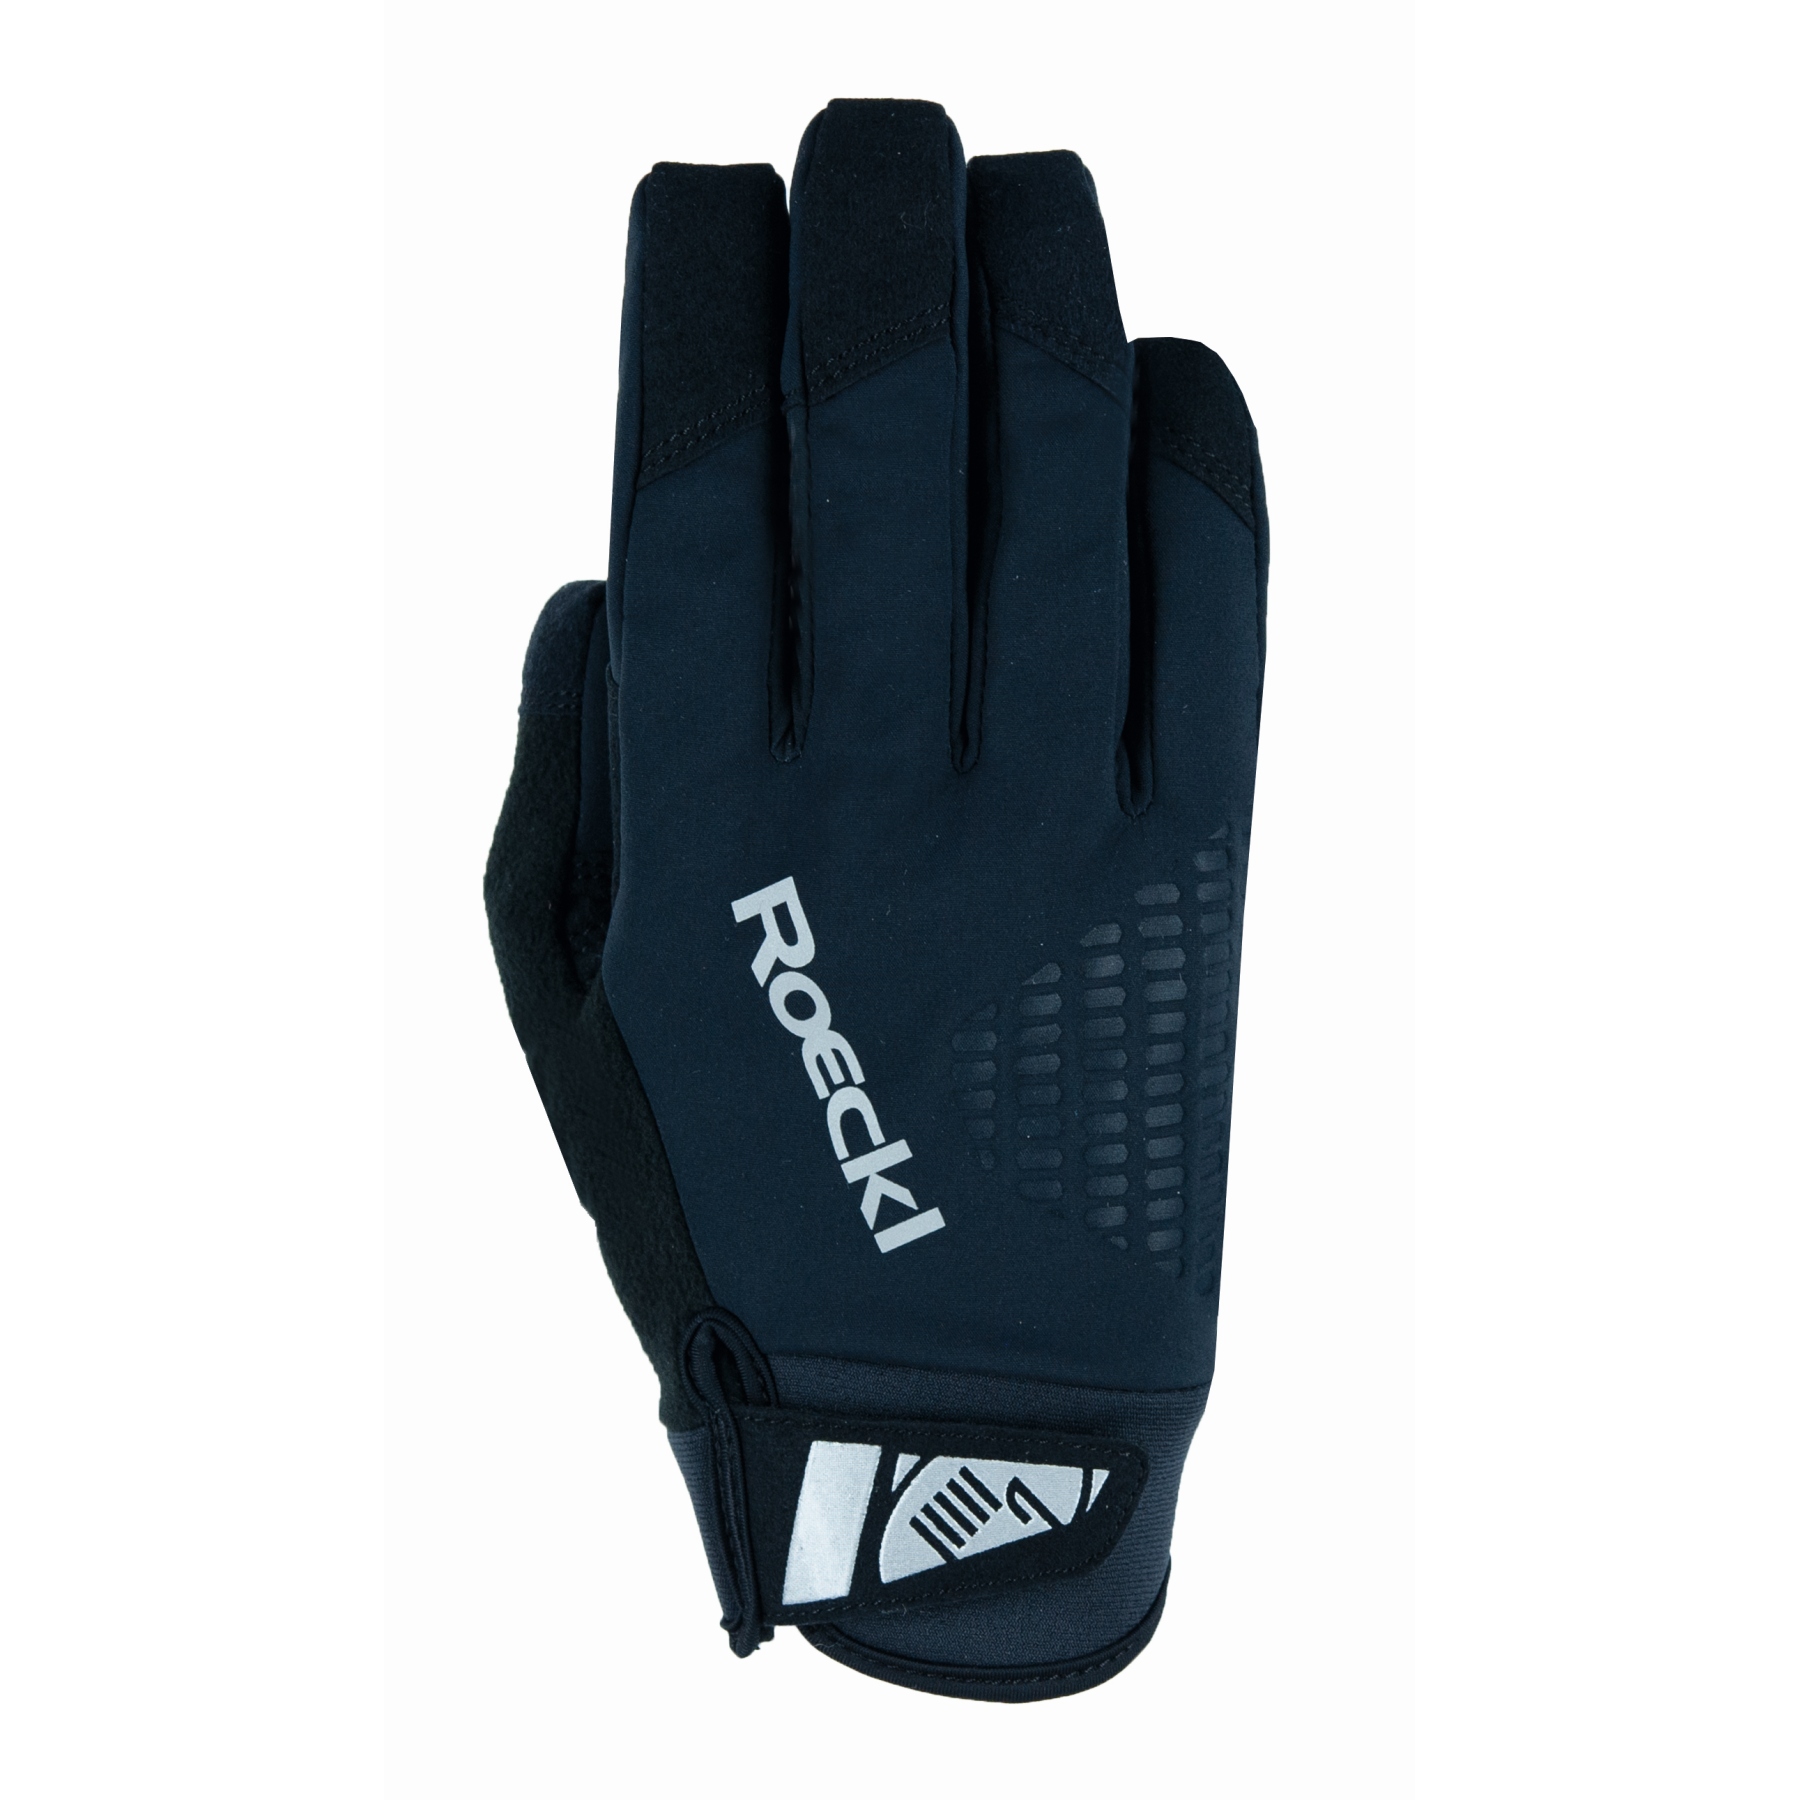 Productfoto van Roeckl Sports Roen Fietshandschoenen - zwart 0999